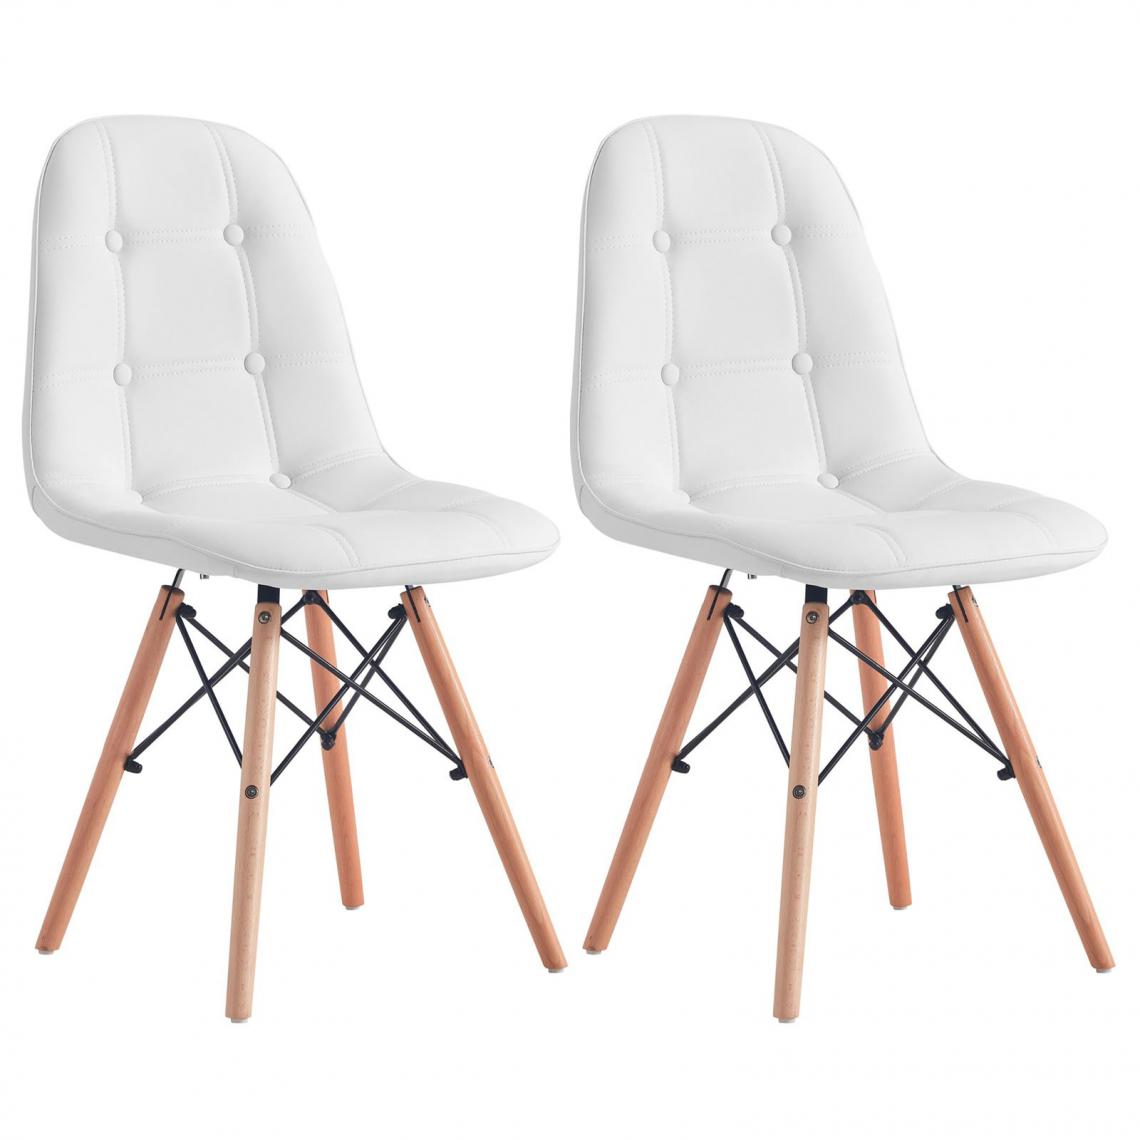 Idimex - Lot de 2 chaises CESAR, en synthétique blanc - Chaises